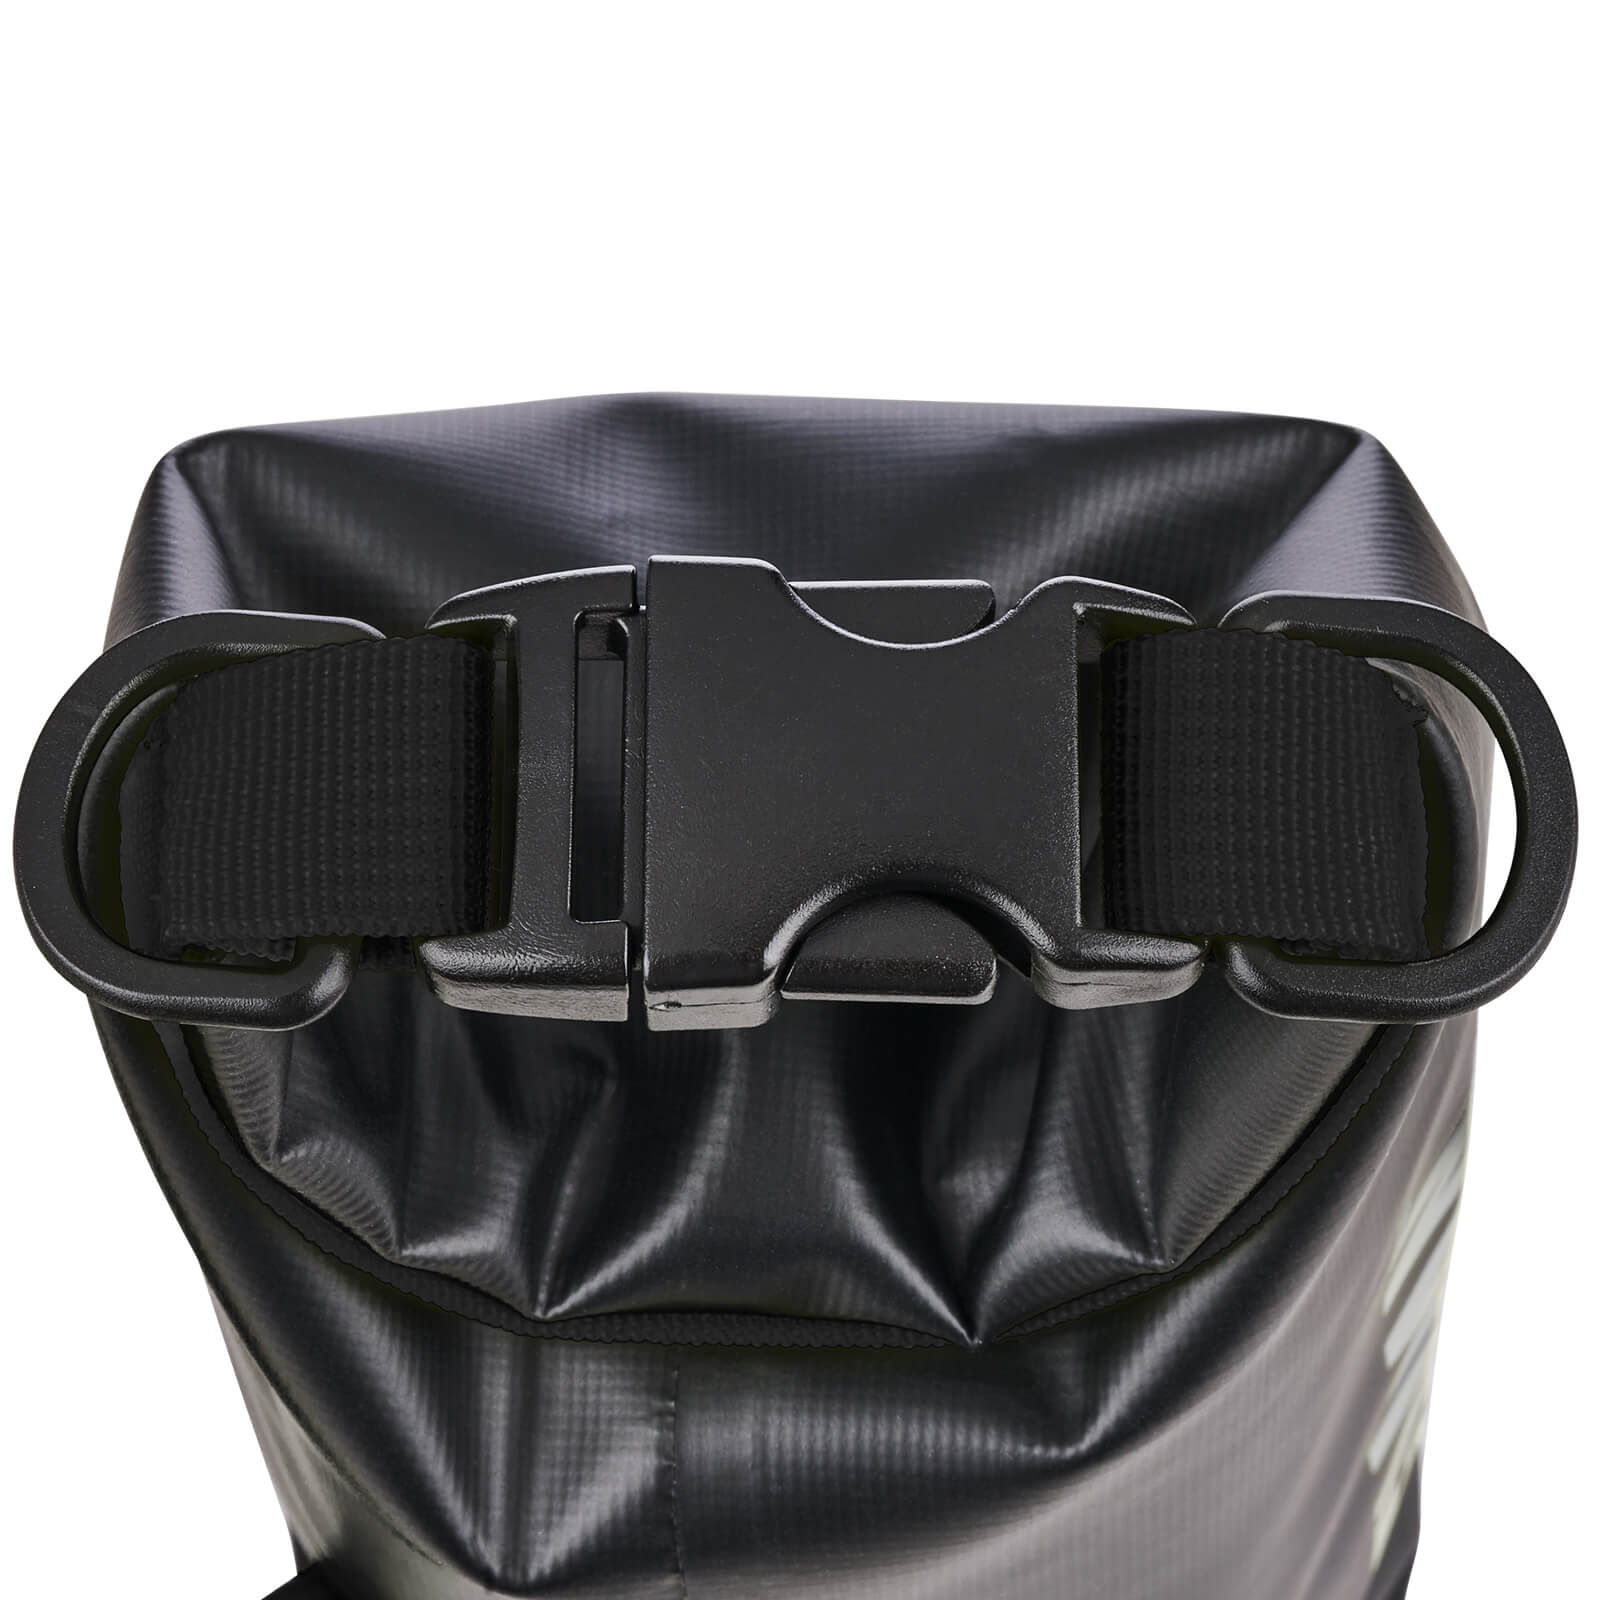  Pelican Marine Waterproof Phone Dry Bag Stealth Black color::Stealth Black